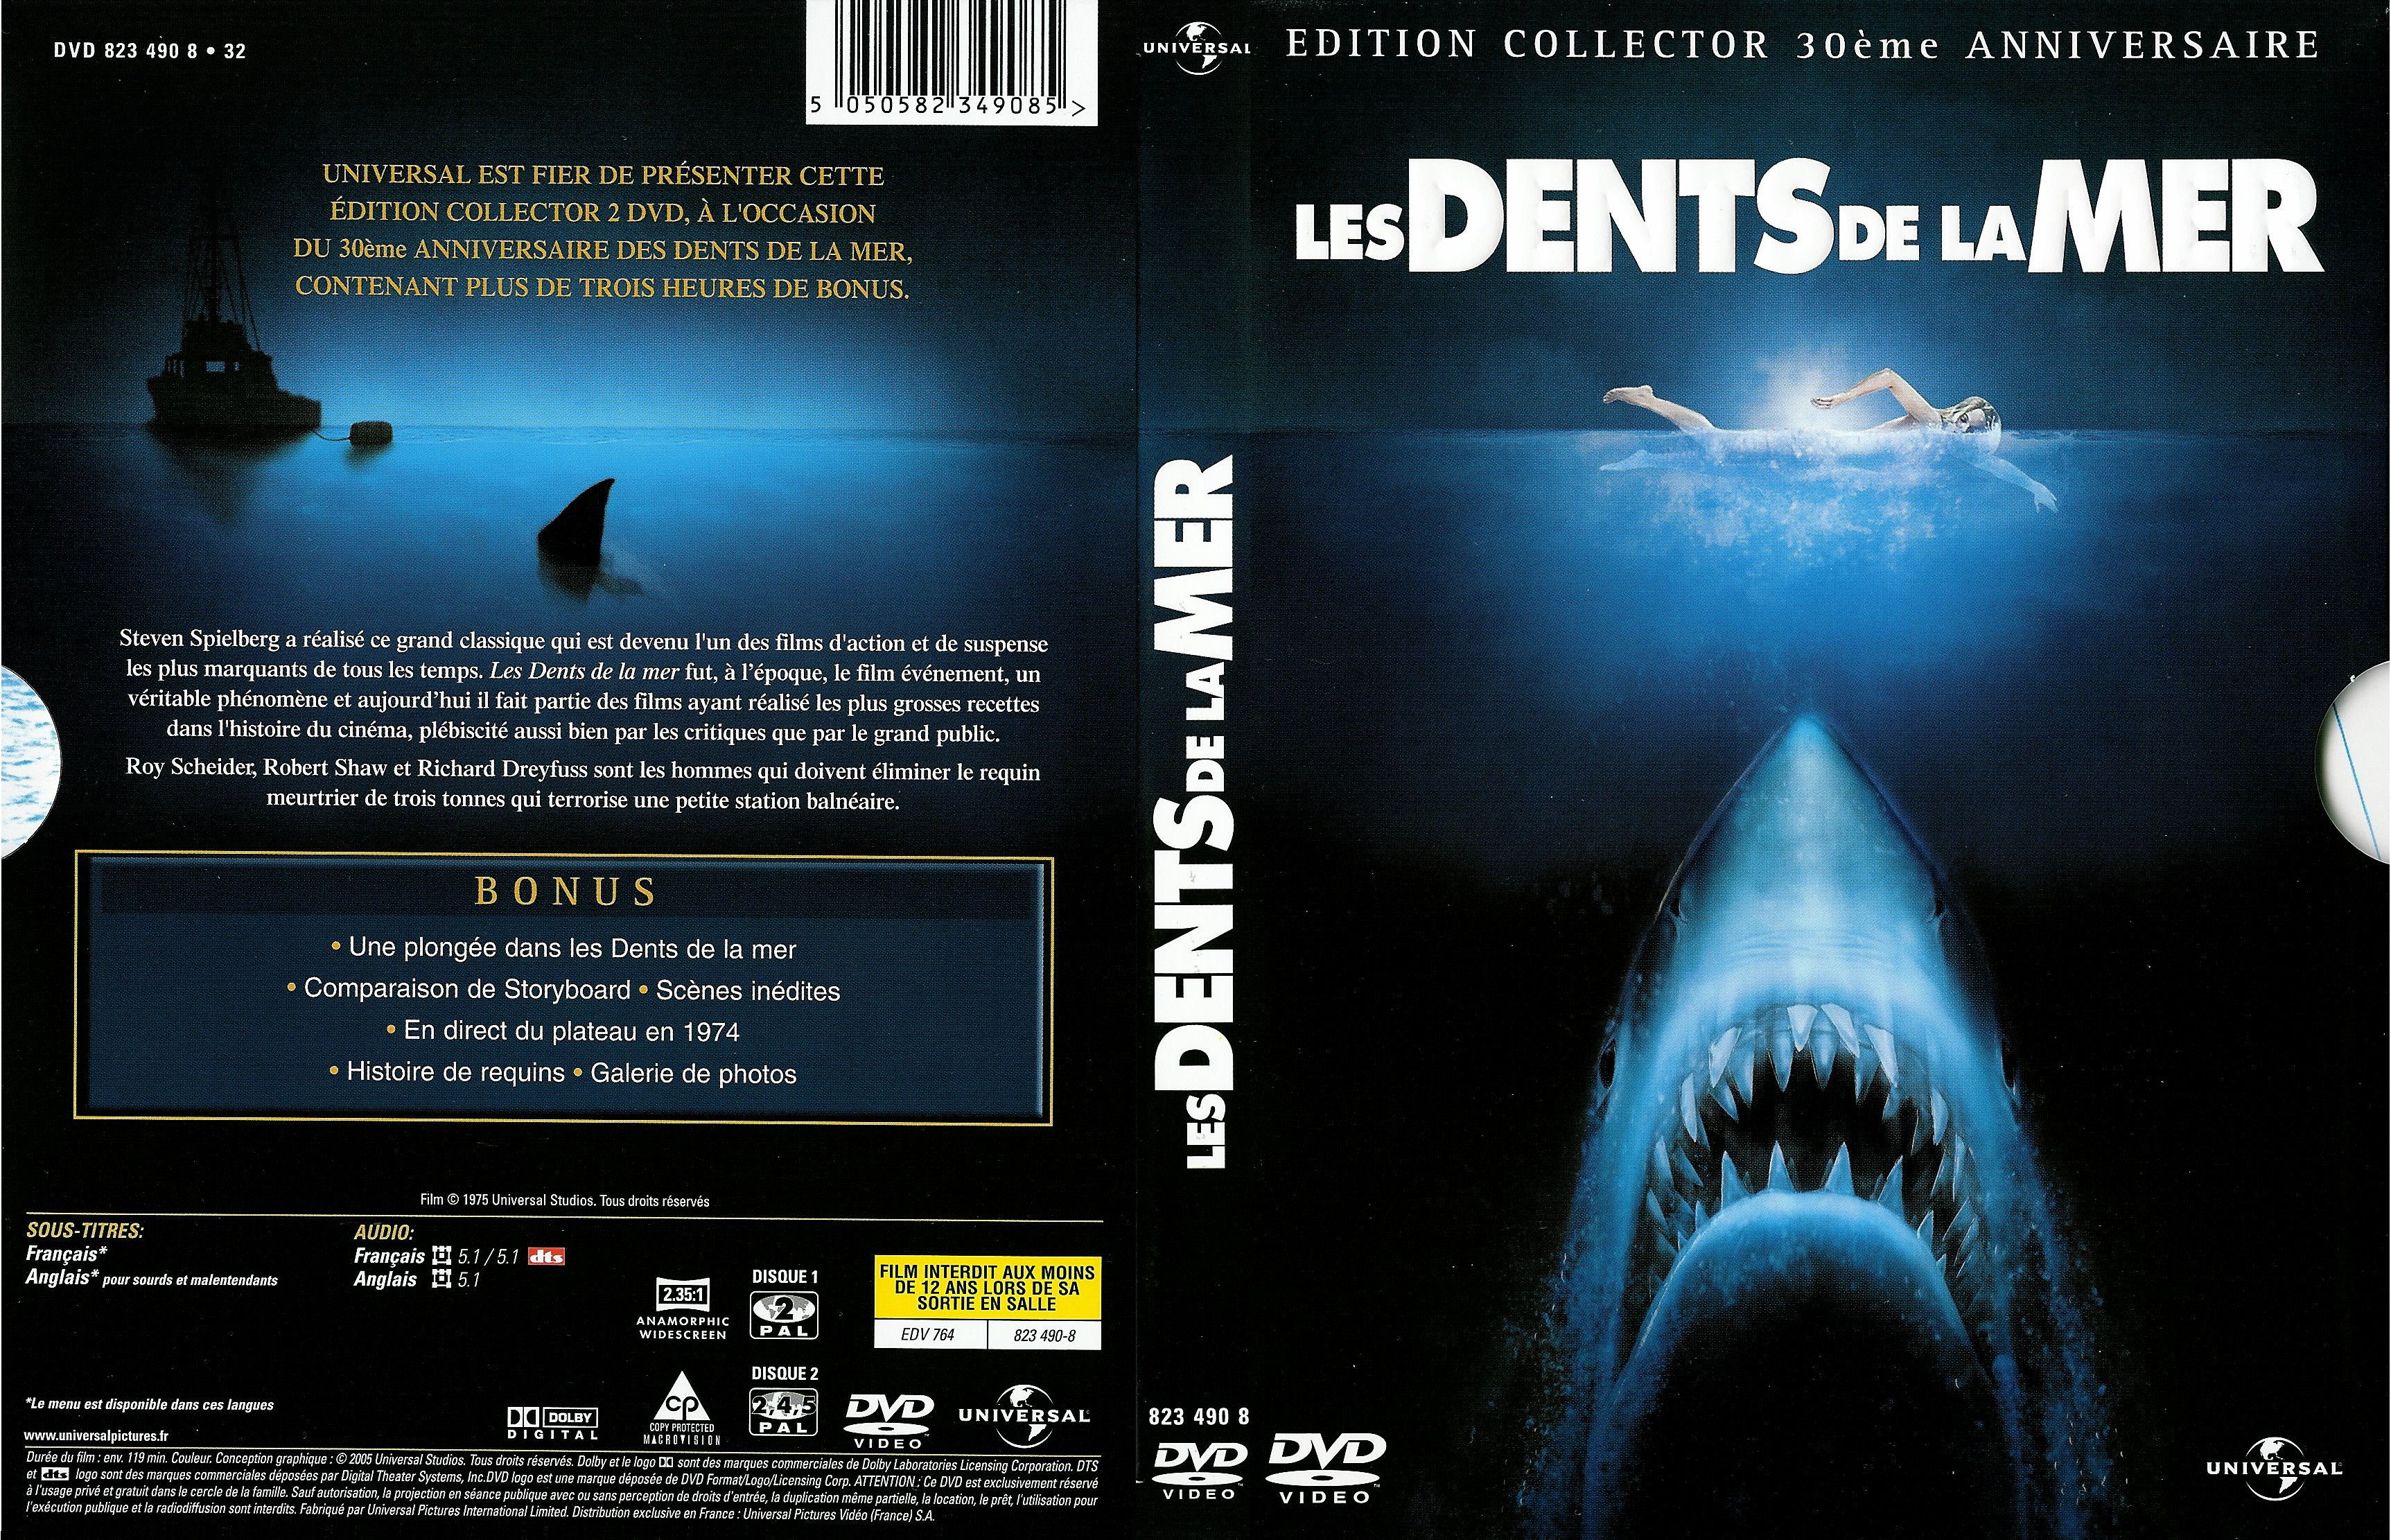 Jaquette DVD Les dents de la mer v2